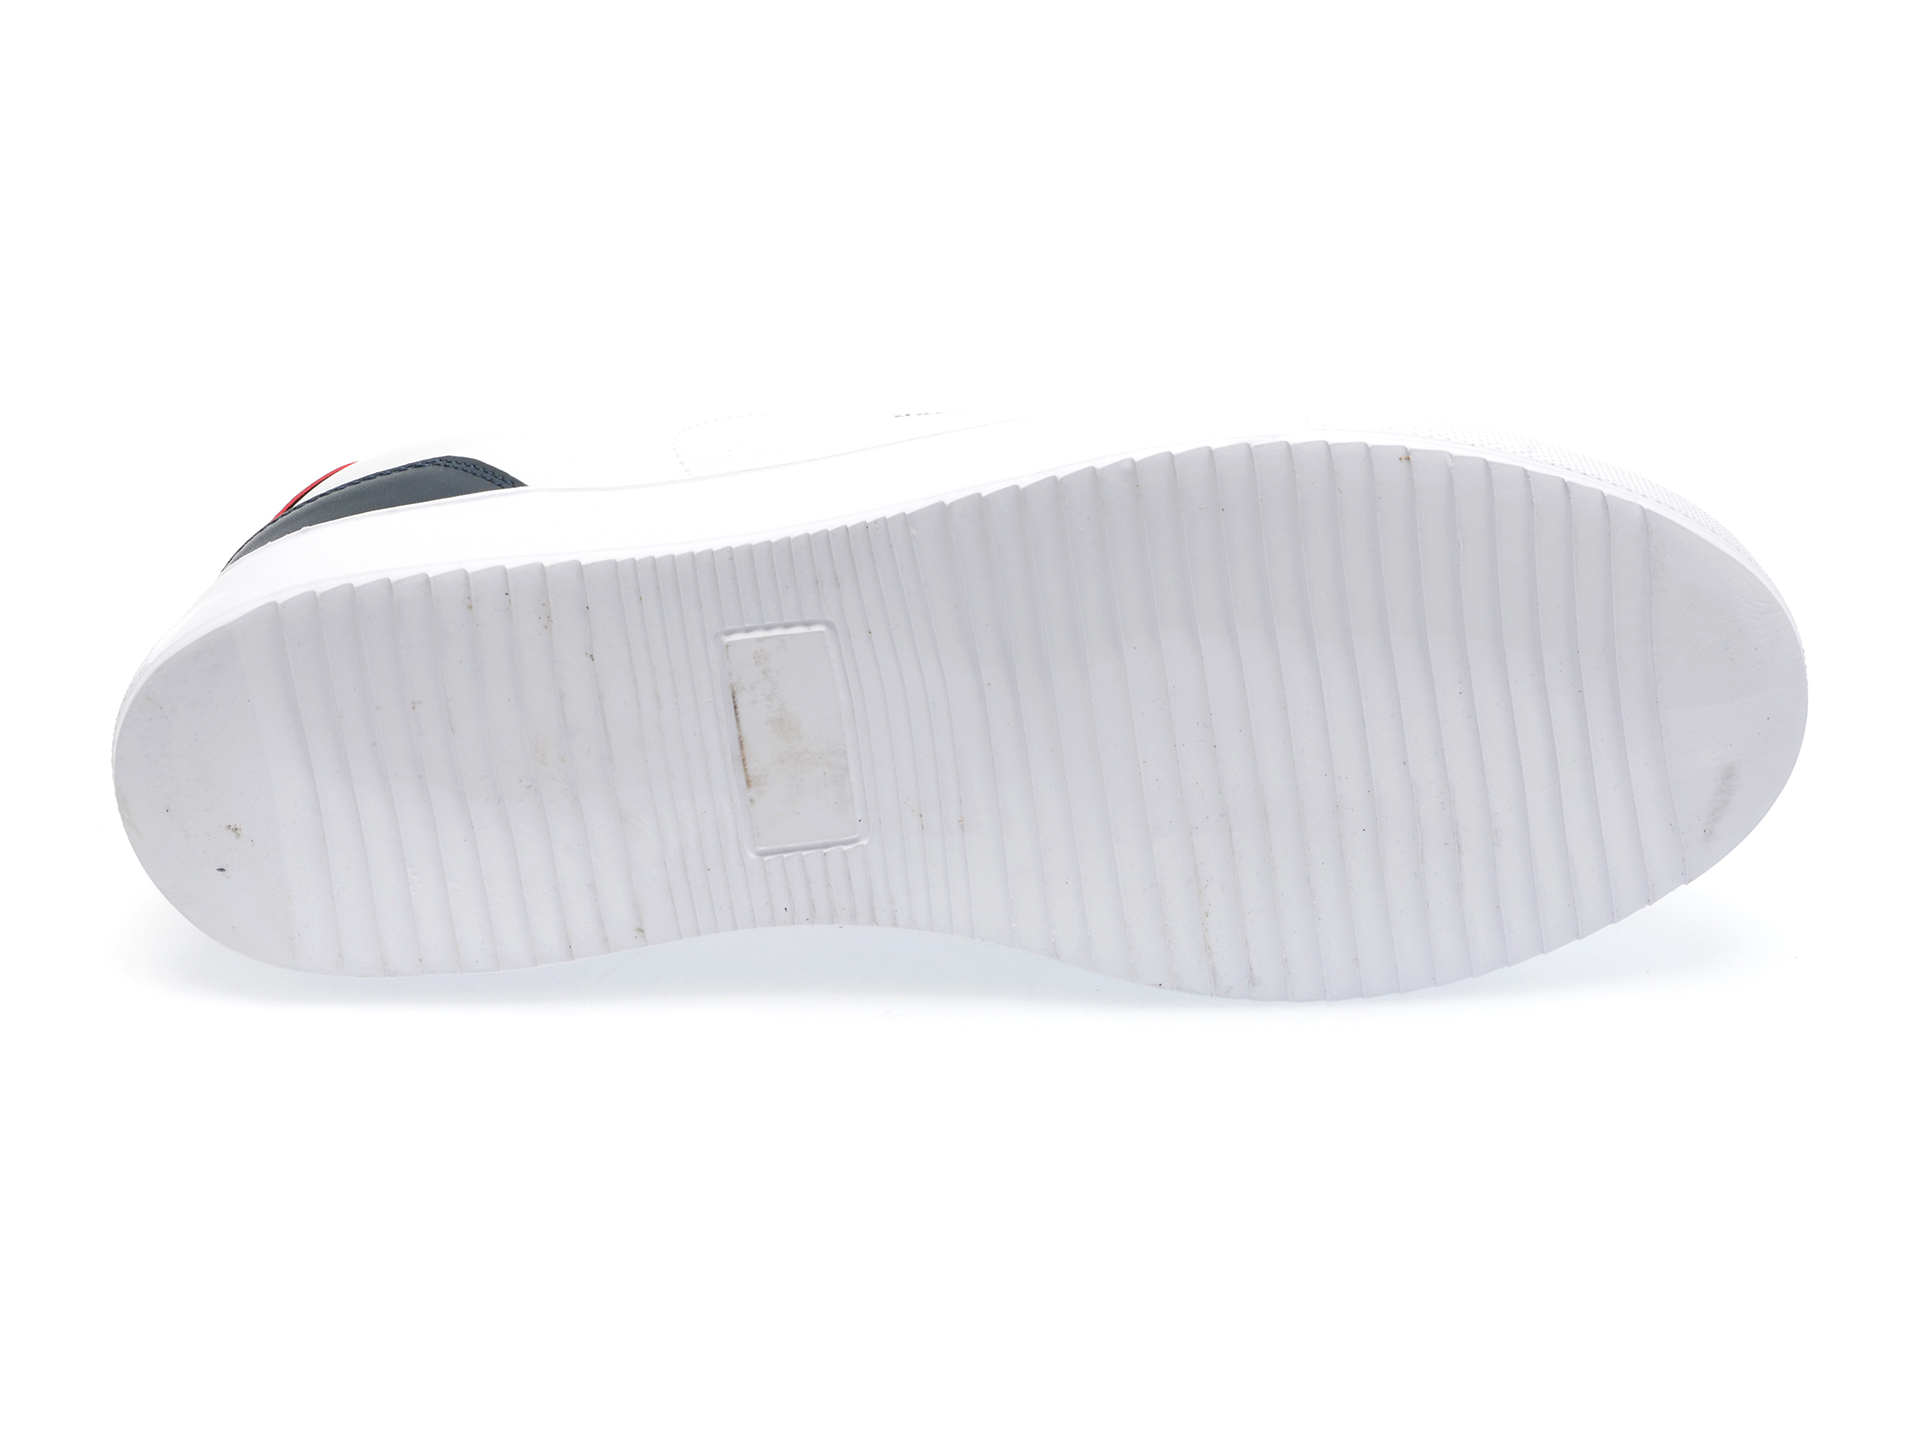 Pantofi US POLO ASSN albi, VERO3FX, din piele ecologica